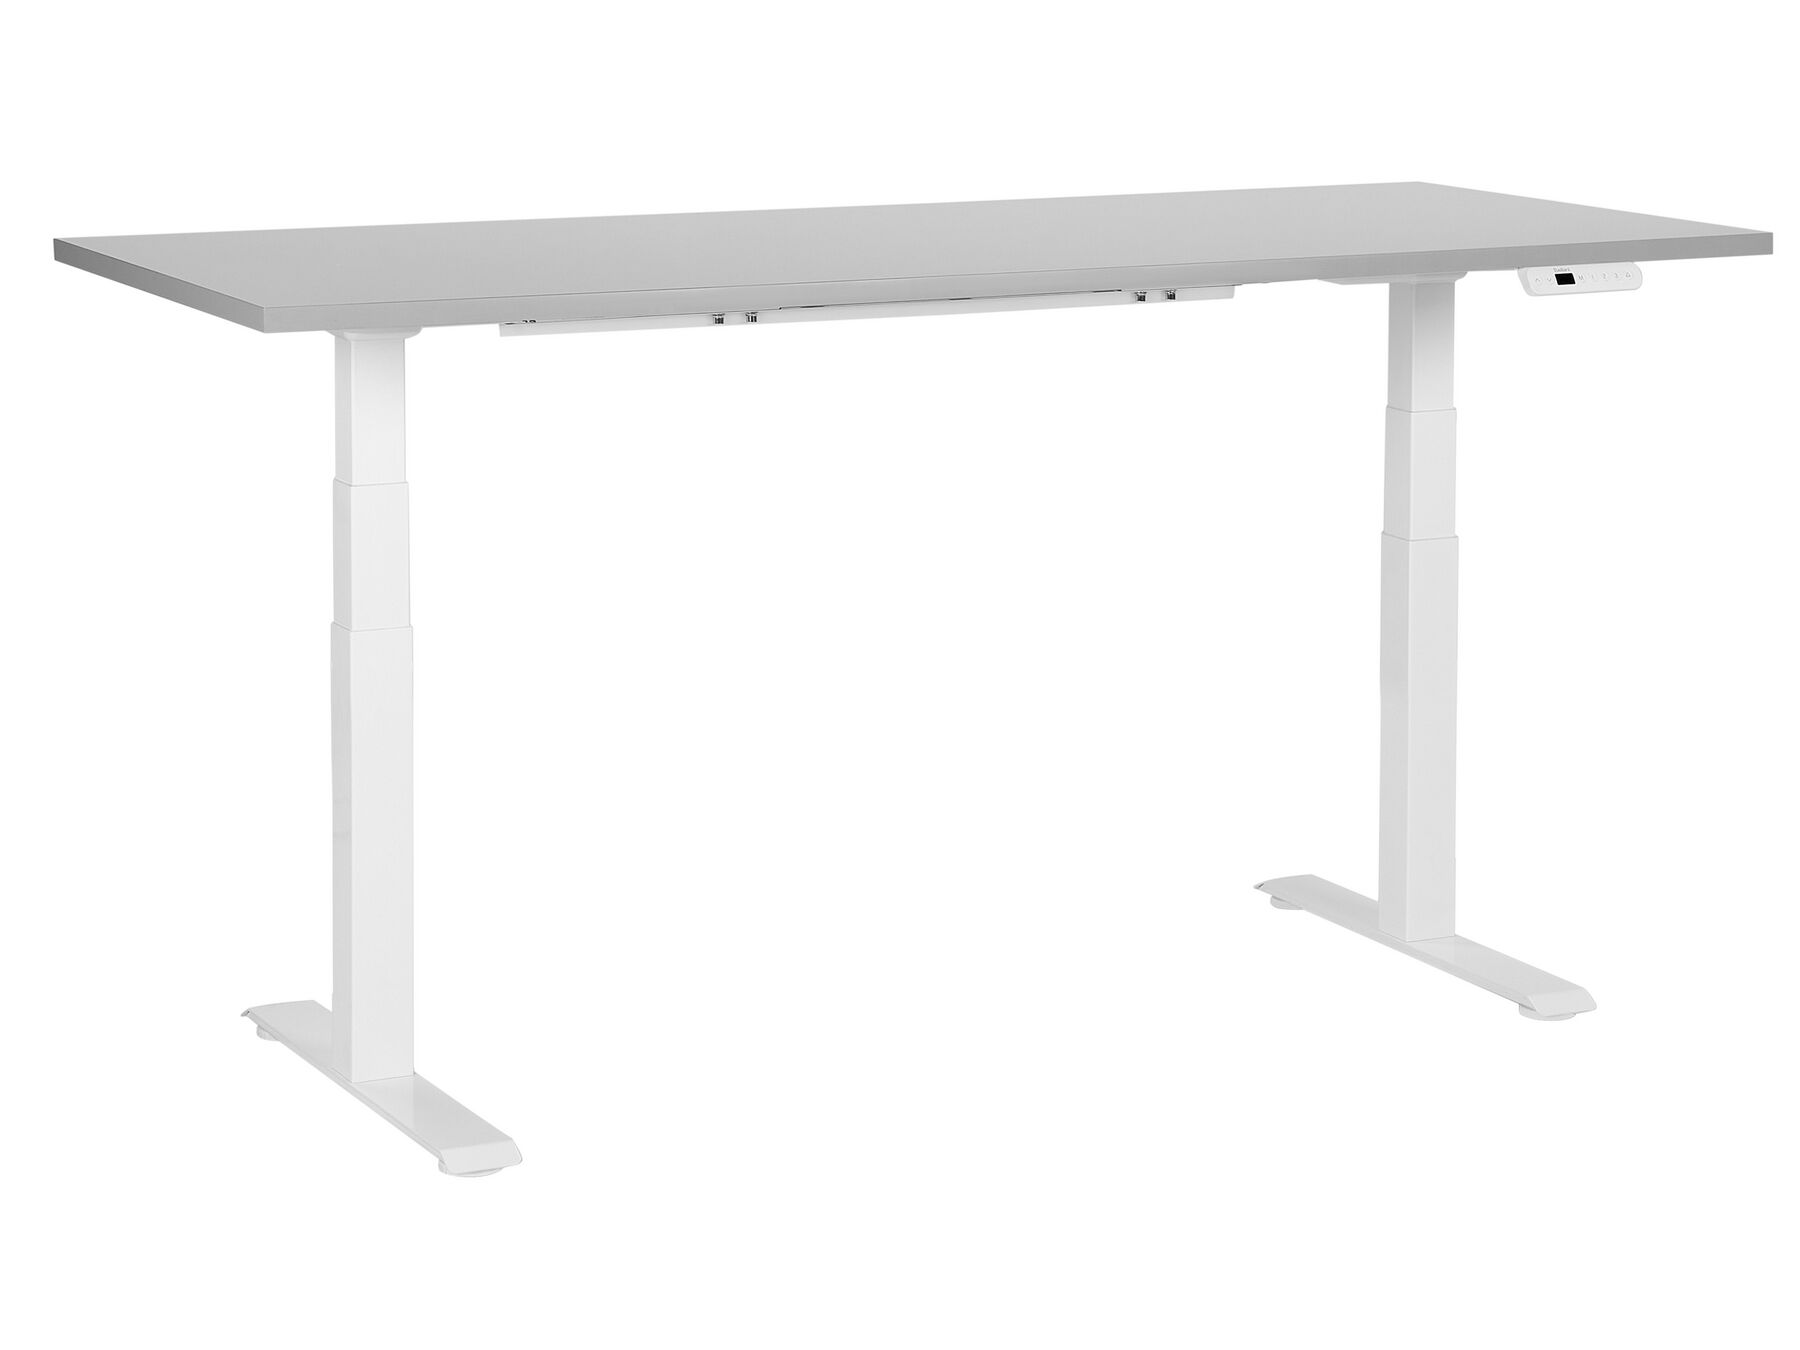 Elektricky nastavitelný psací stůl 180 x 80 cm šedý/bílý DESTINES_899394